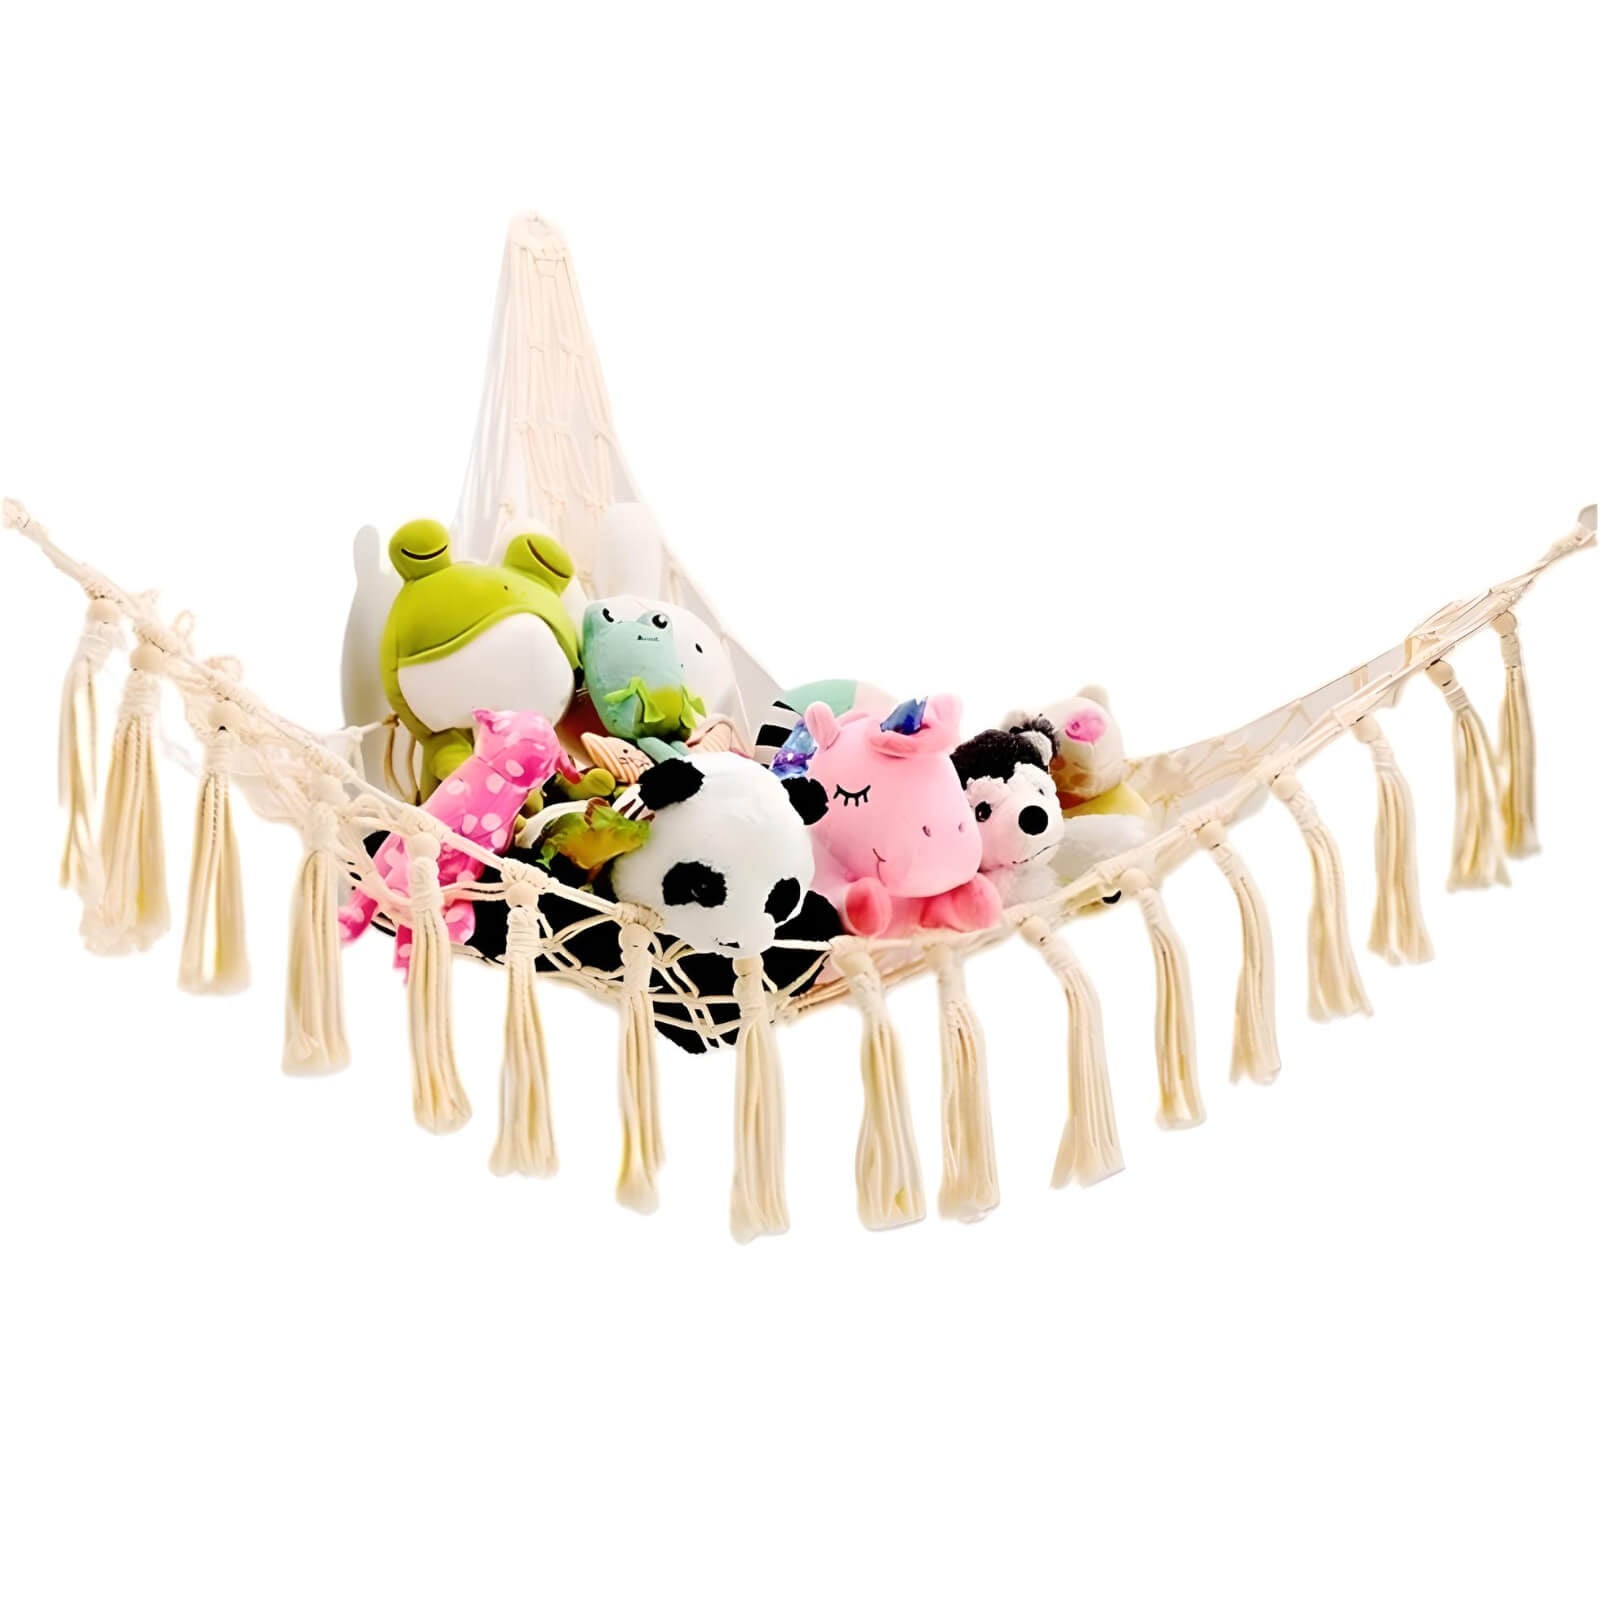 toy-net-hammock-for-kids